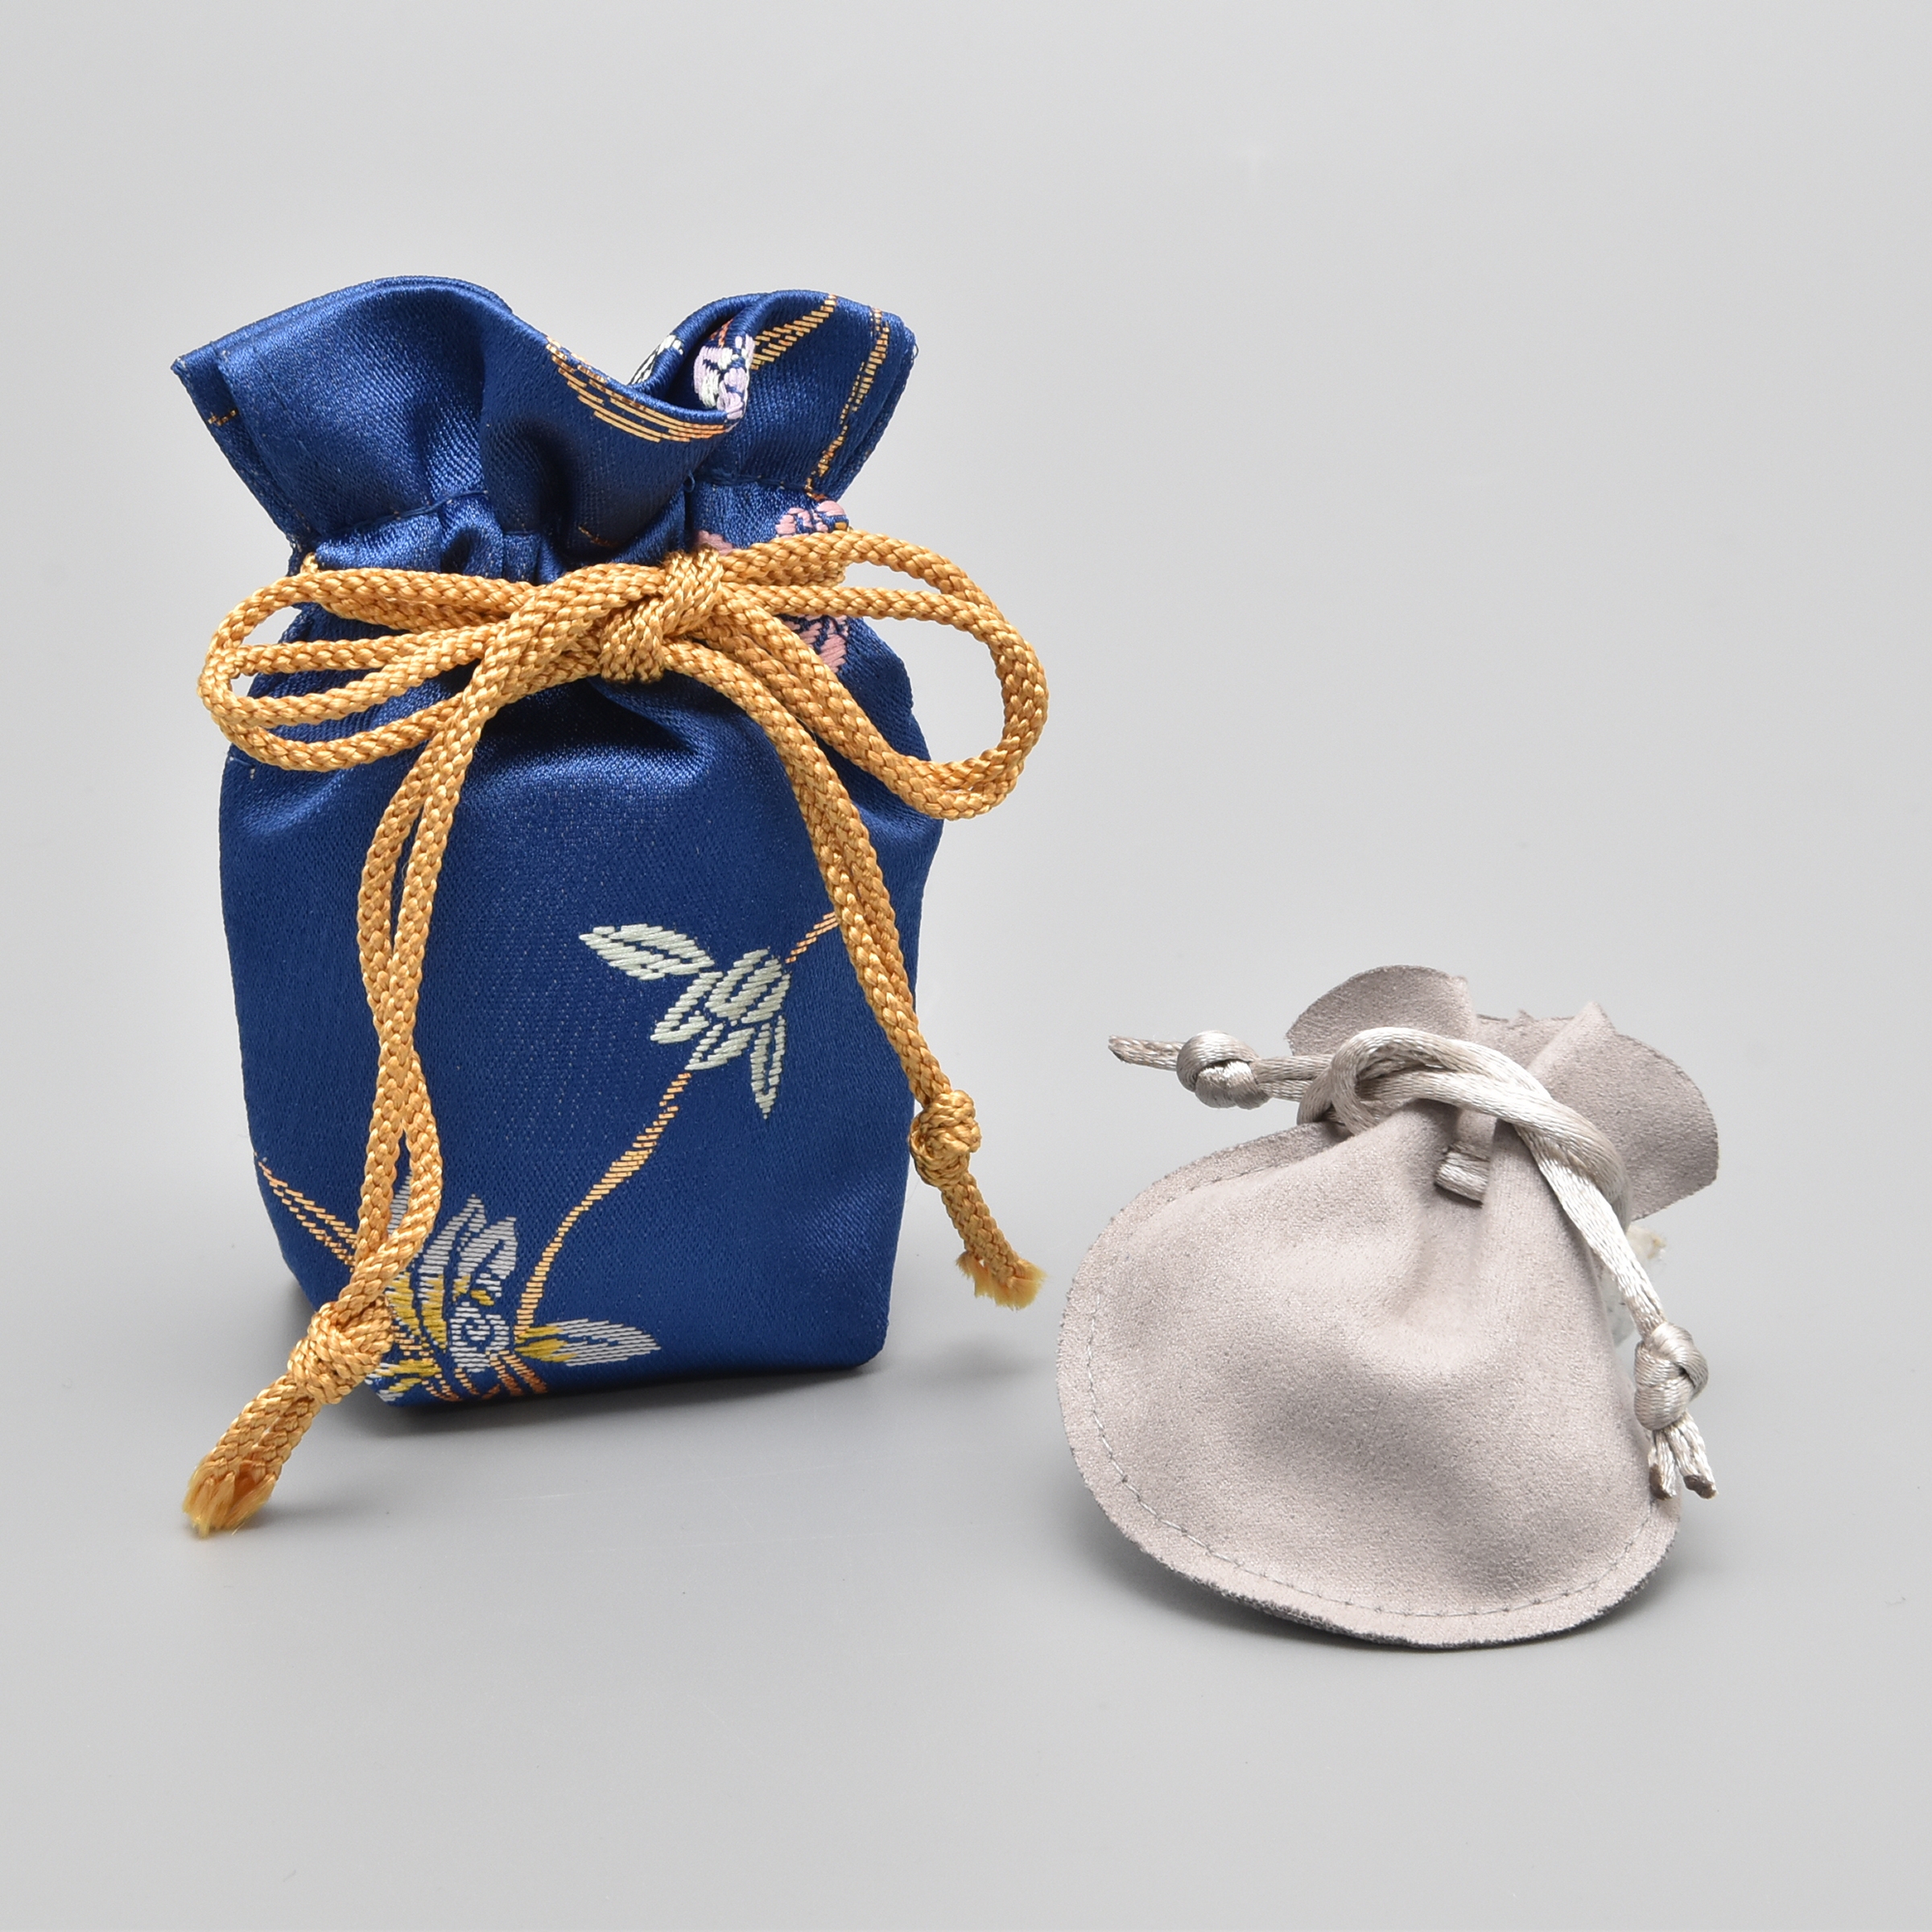 お骨を入れる白い袋と骨壺を入れるブルーの化粧袋（蘭のデザイン）がついています。
※付属はオンランショップのみとなります。